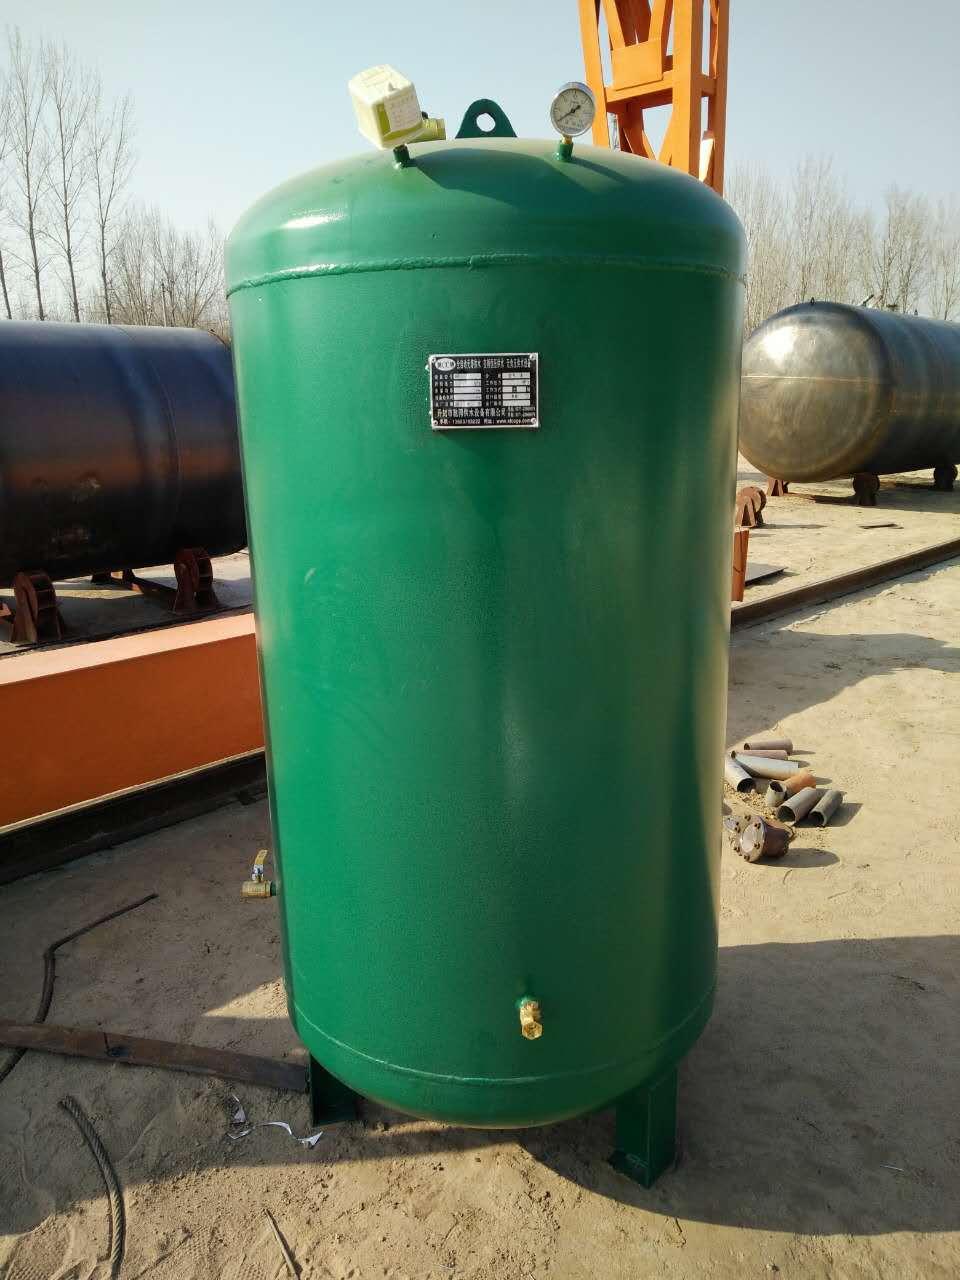 5,立式无塔供水设备泵机组应常常查看,定时保护并加注润滑油.